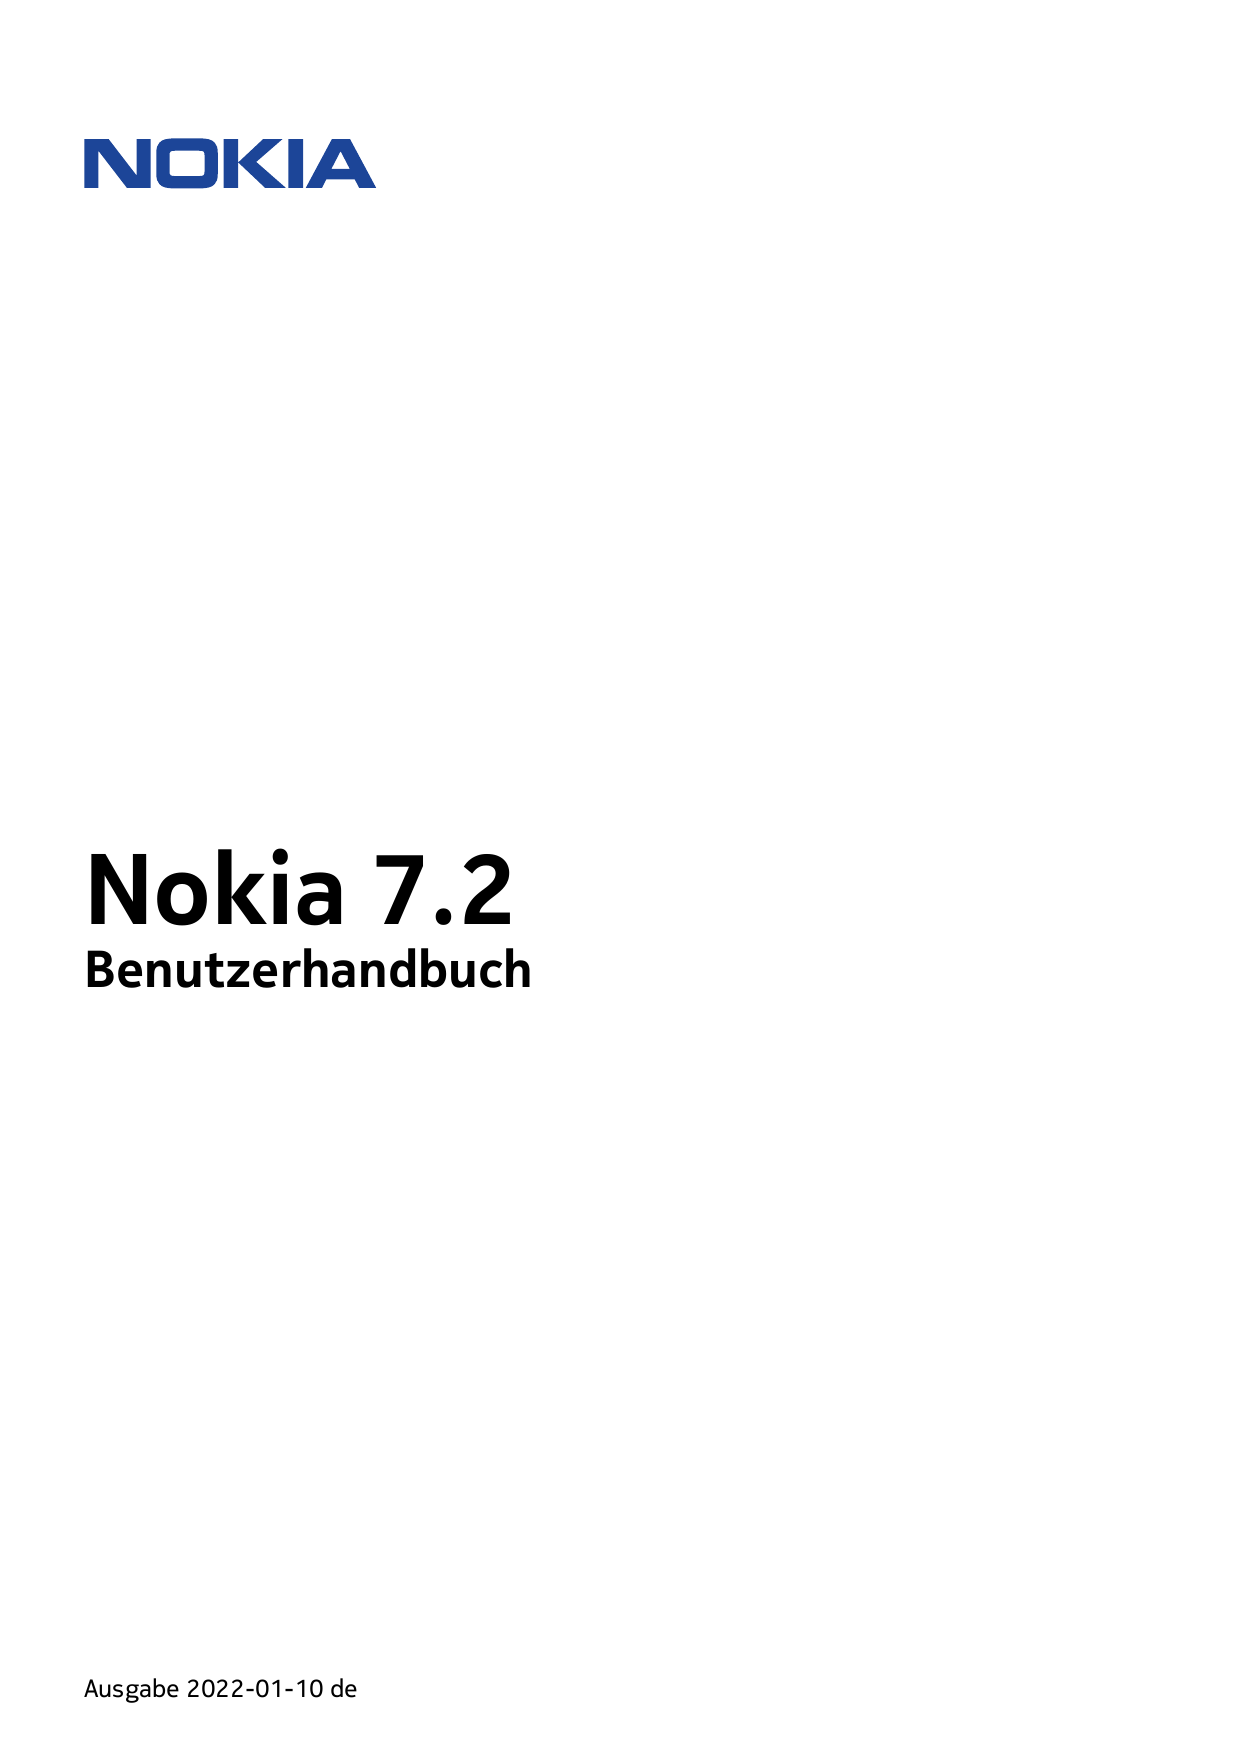 Nokia 7.2BenutzerhandbuchAusgabe 2022-01-10 de